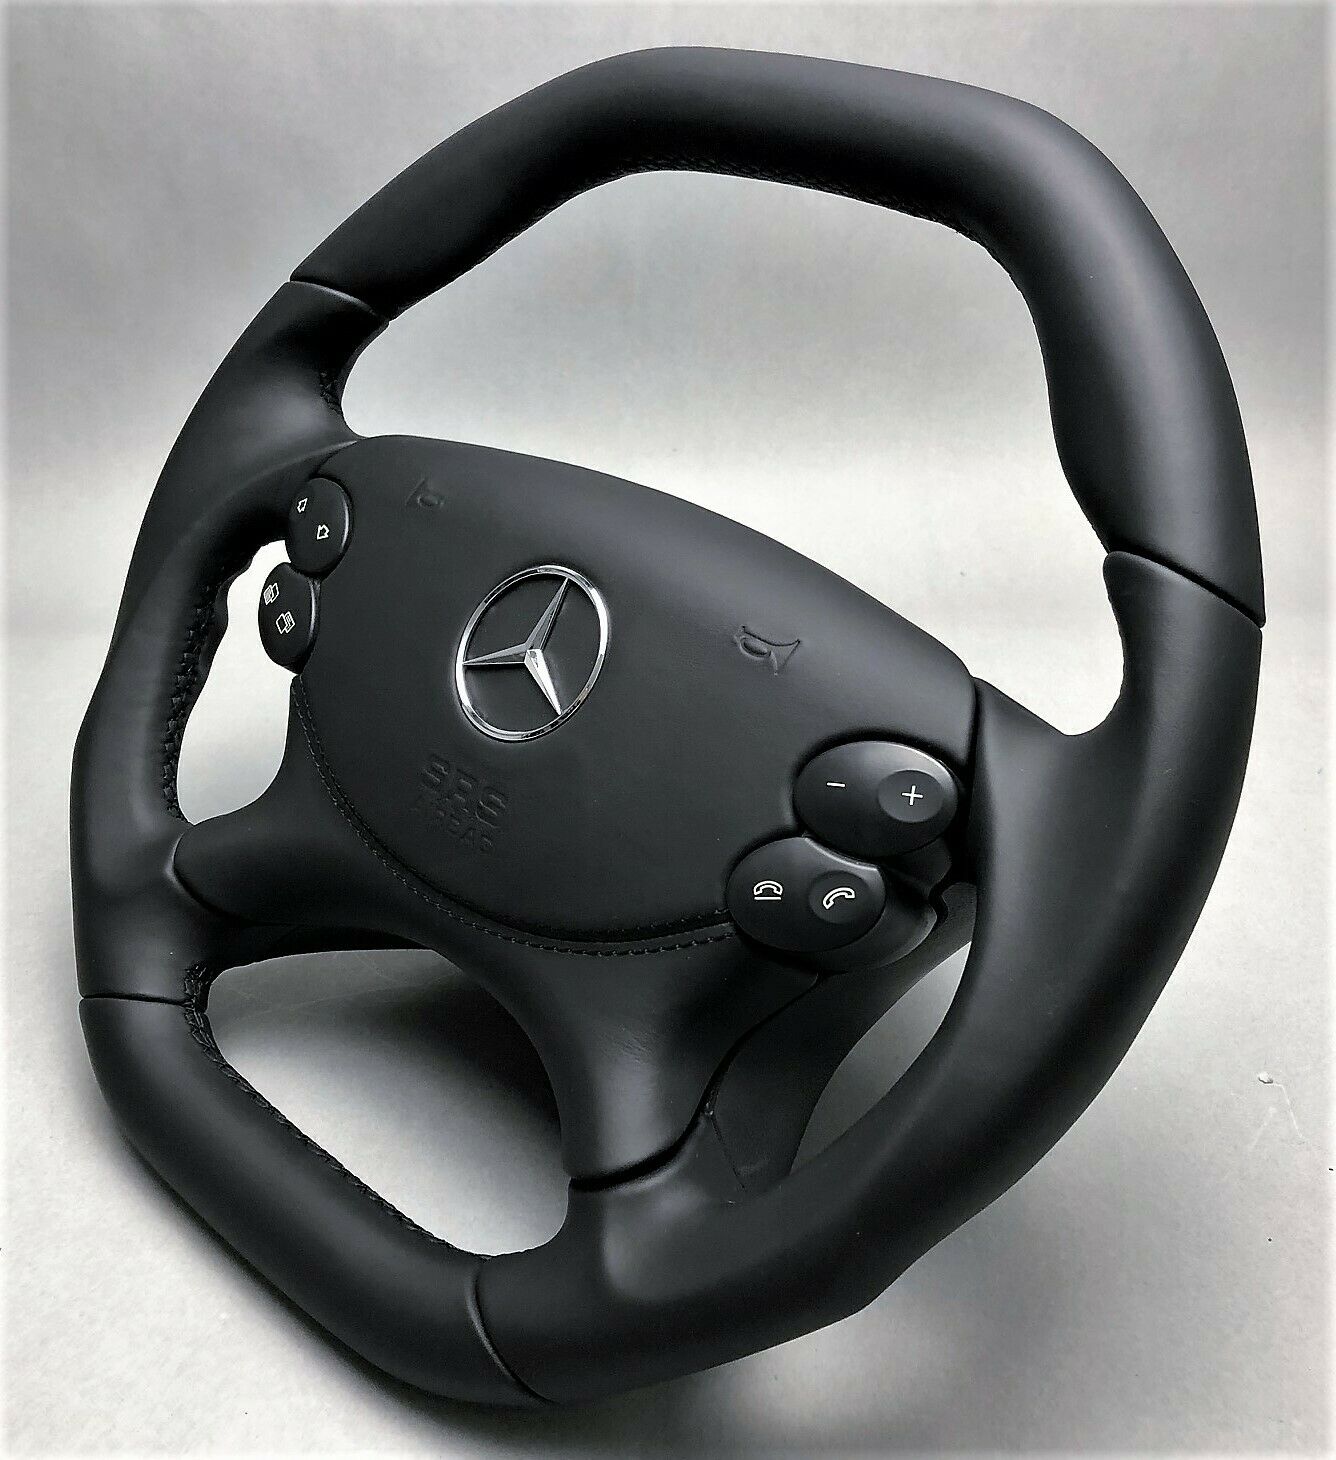 Kaufe 1 paar Auto Lenkrad Schalter Control Taste Trim Abdeckung Für Mercedes-Benz  E CLS G SL CLK W211 w219 W209 W463 W230